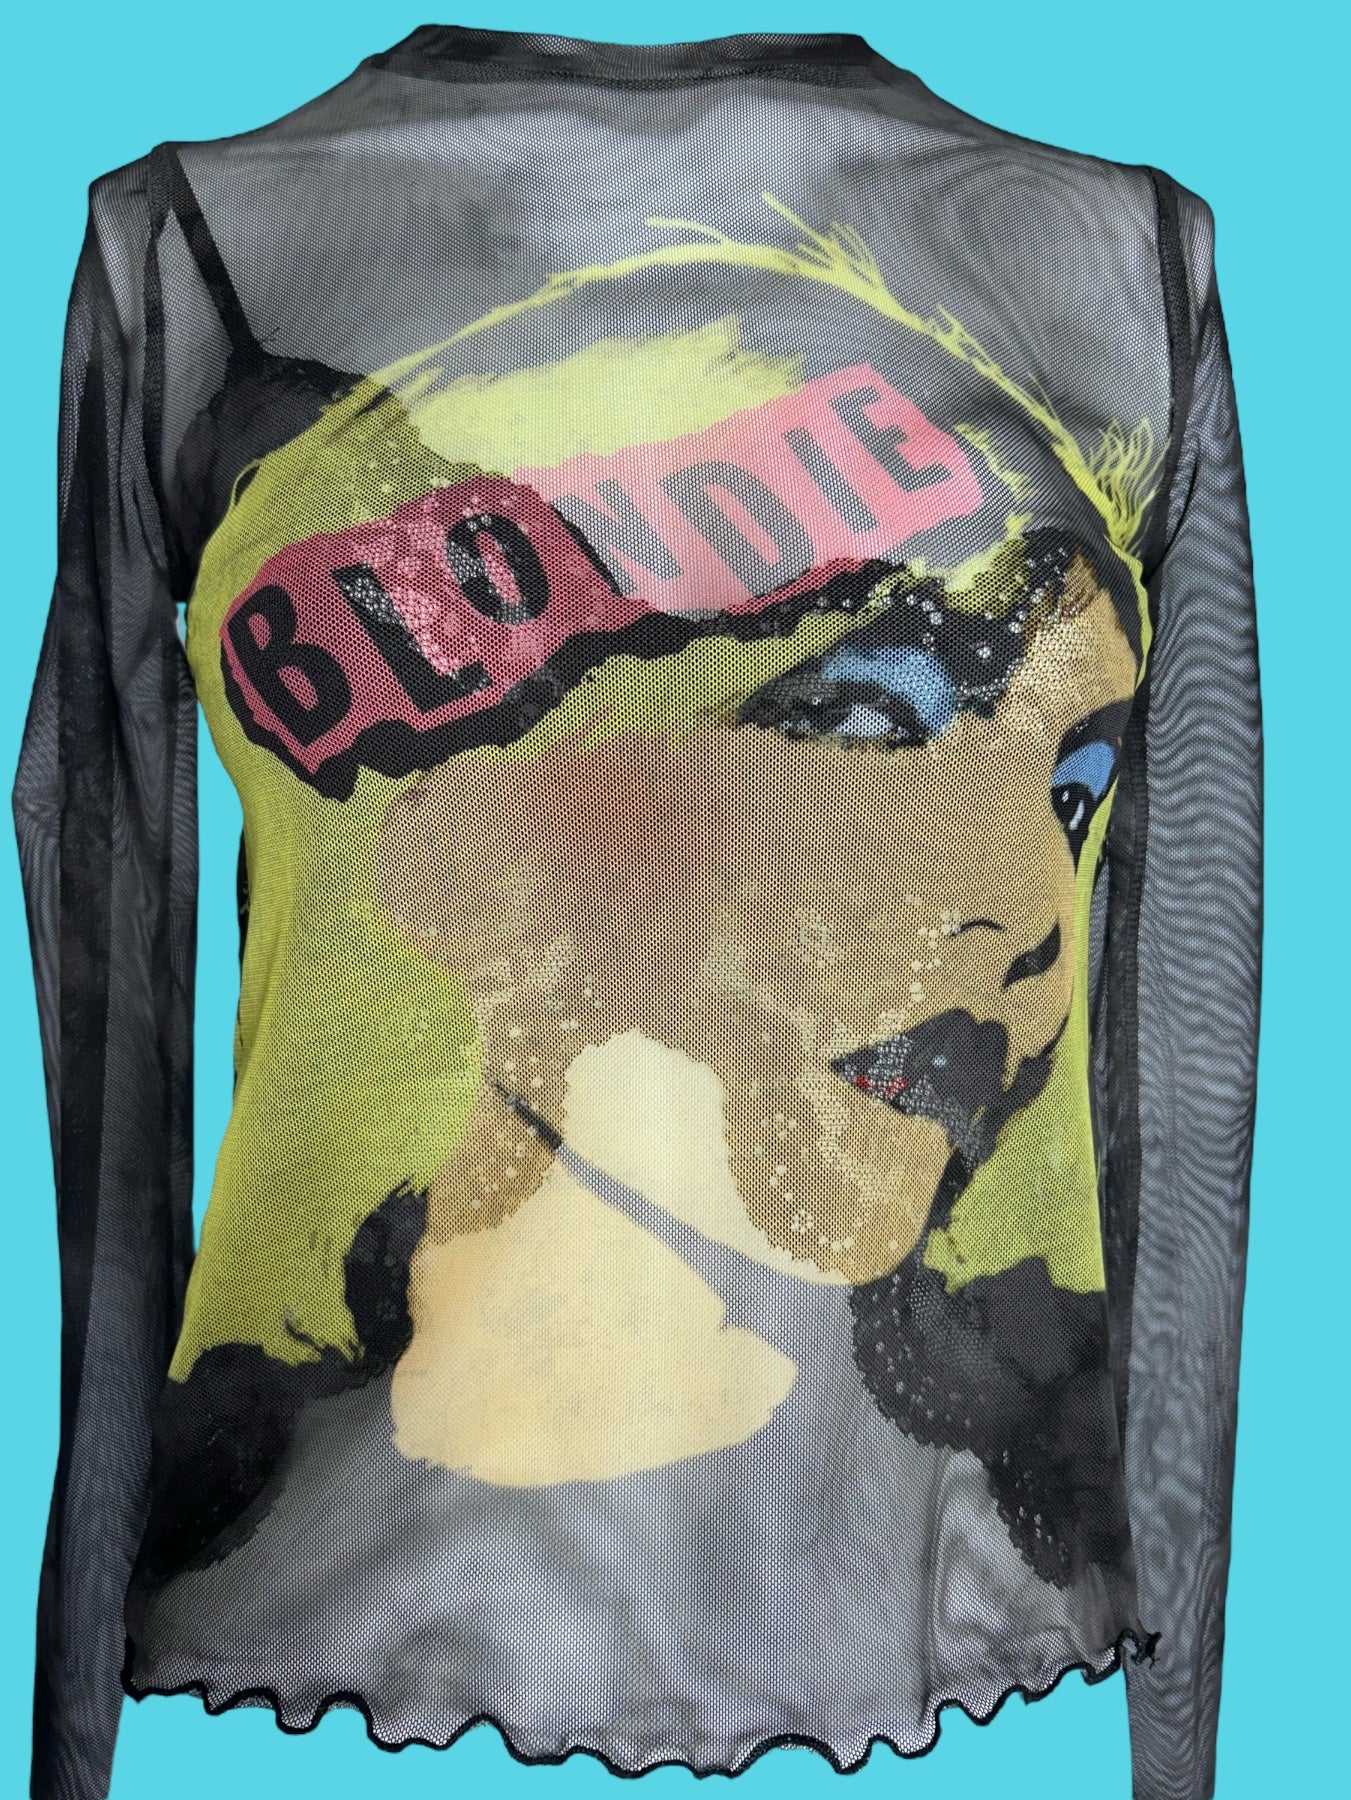 Debbie Harry Blondie Andy Warhol Portrait Print Mesh Top